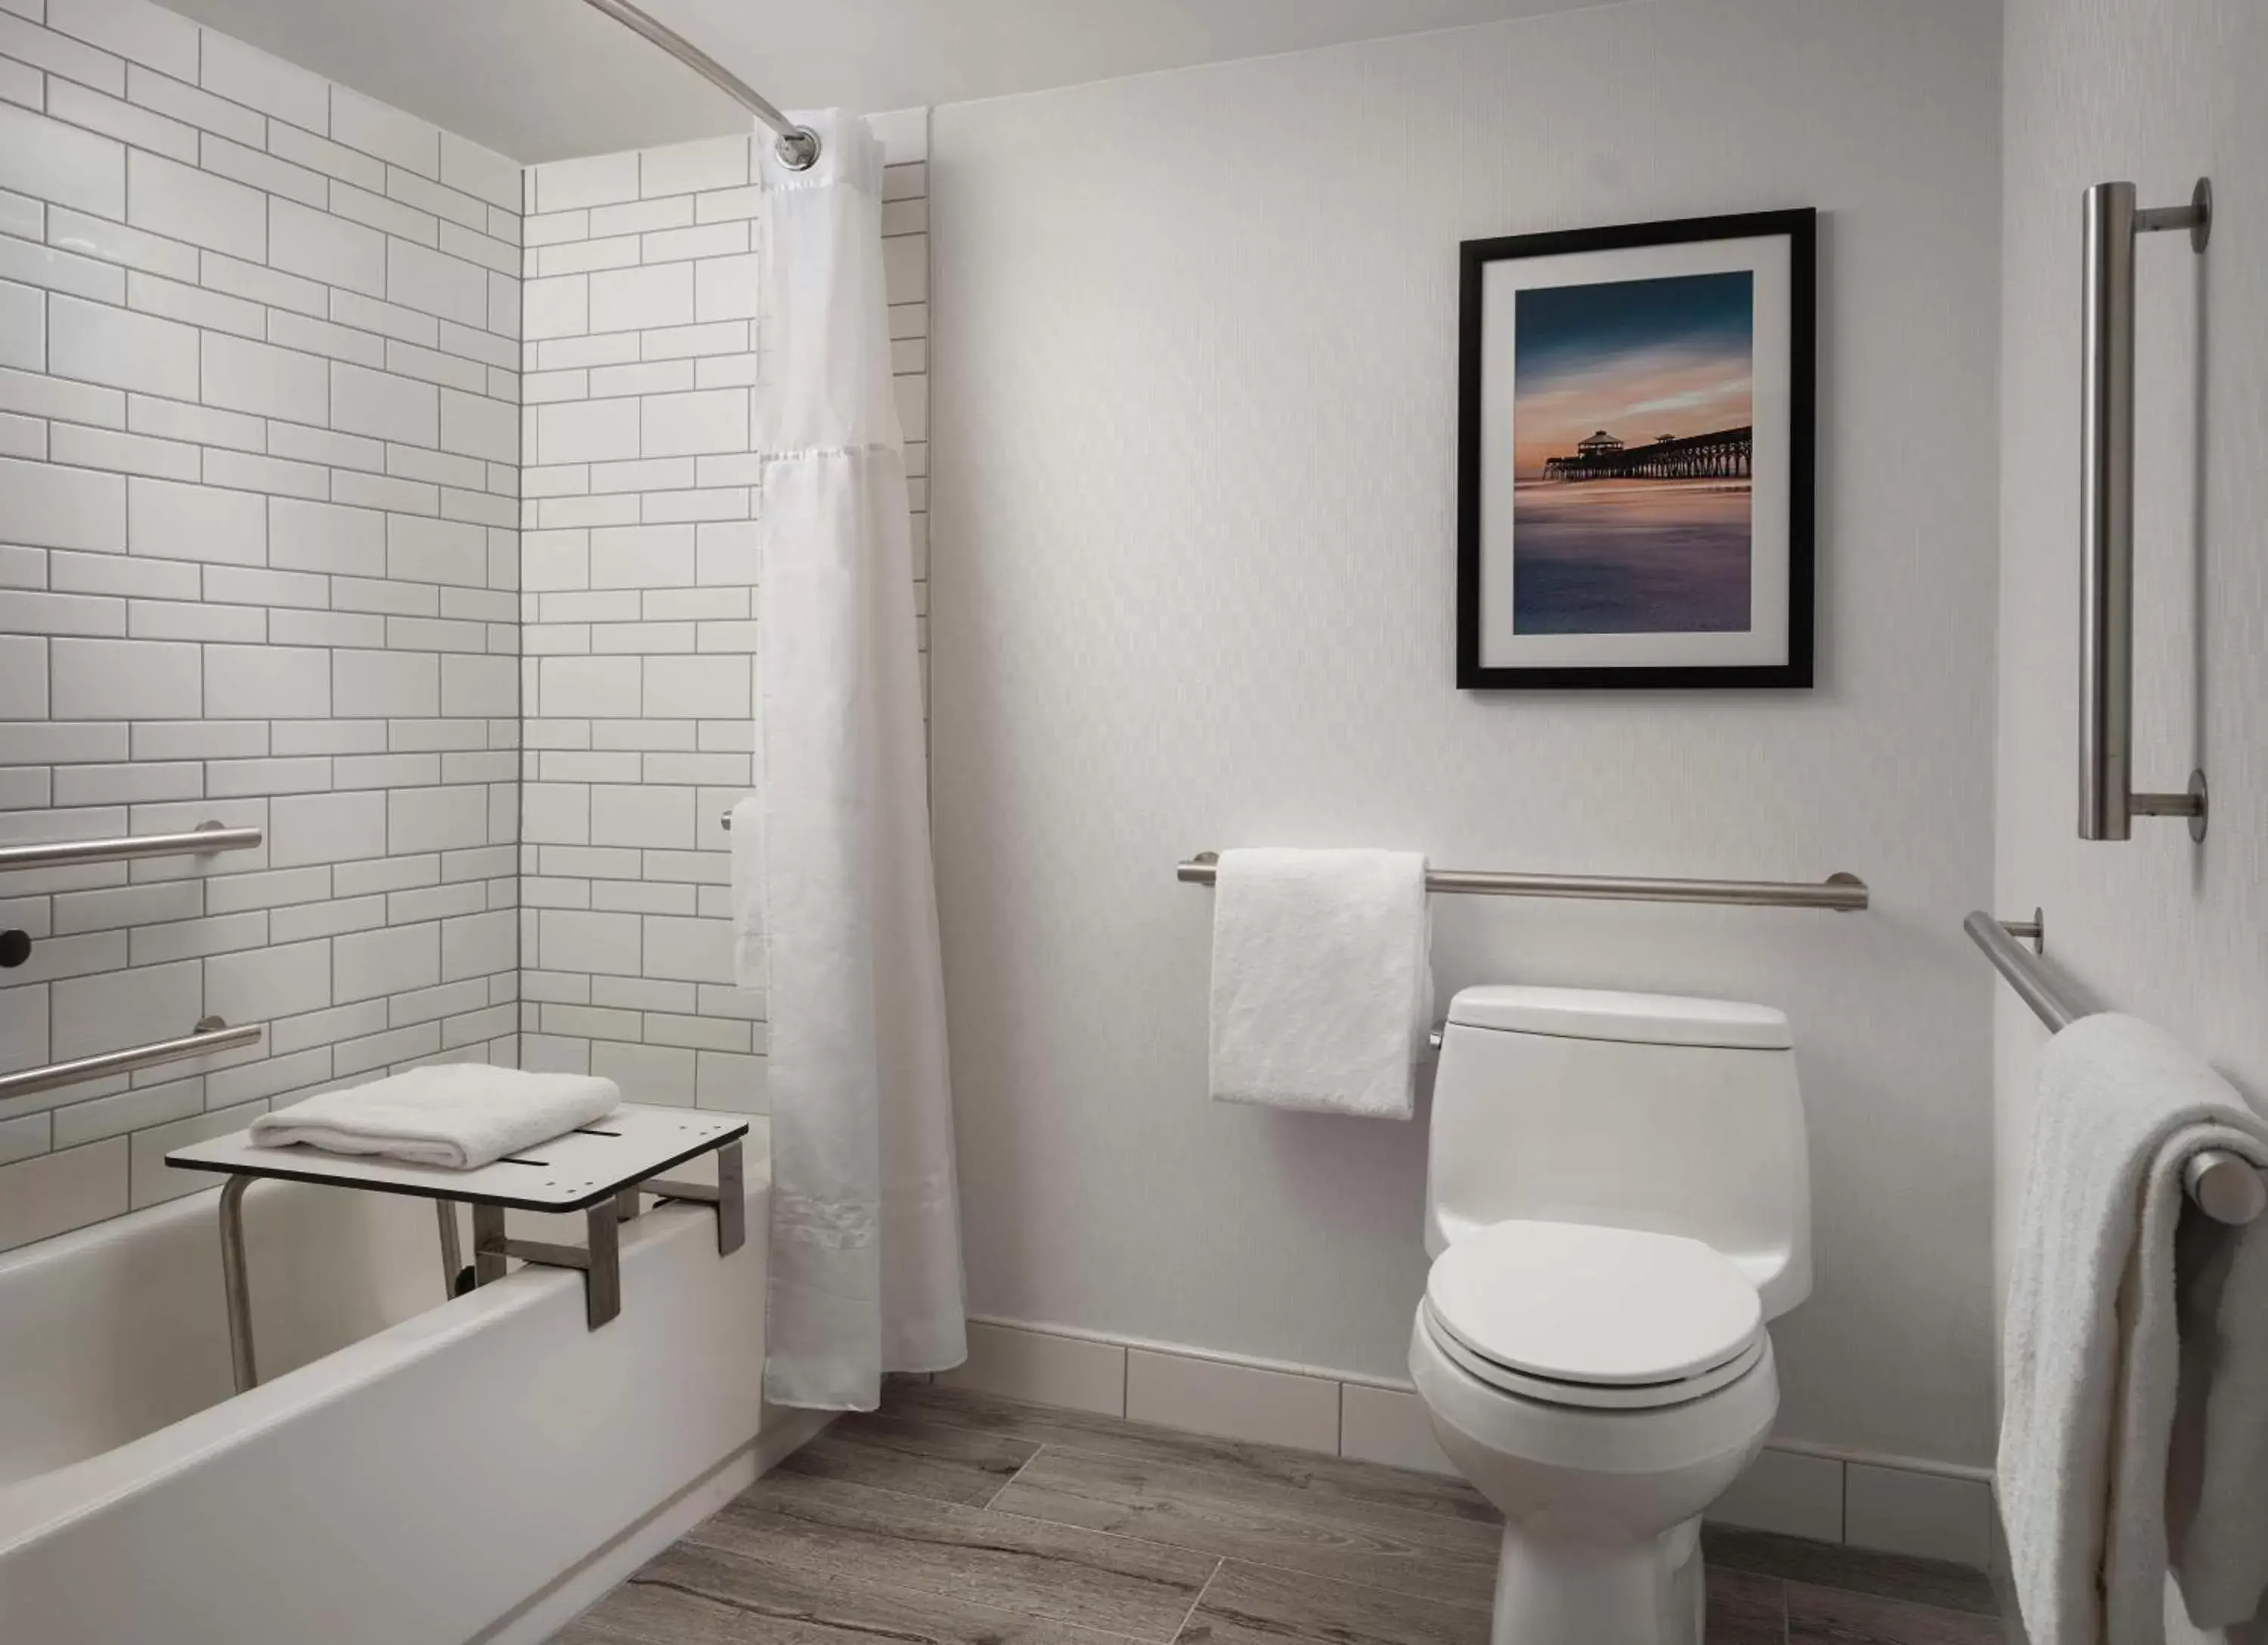 Shower, Bathroom in Hilton Myrtle Beach Resort